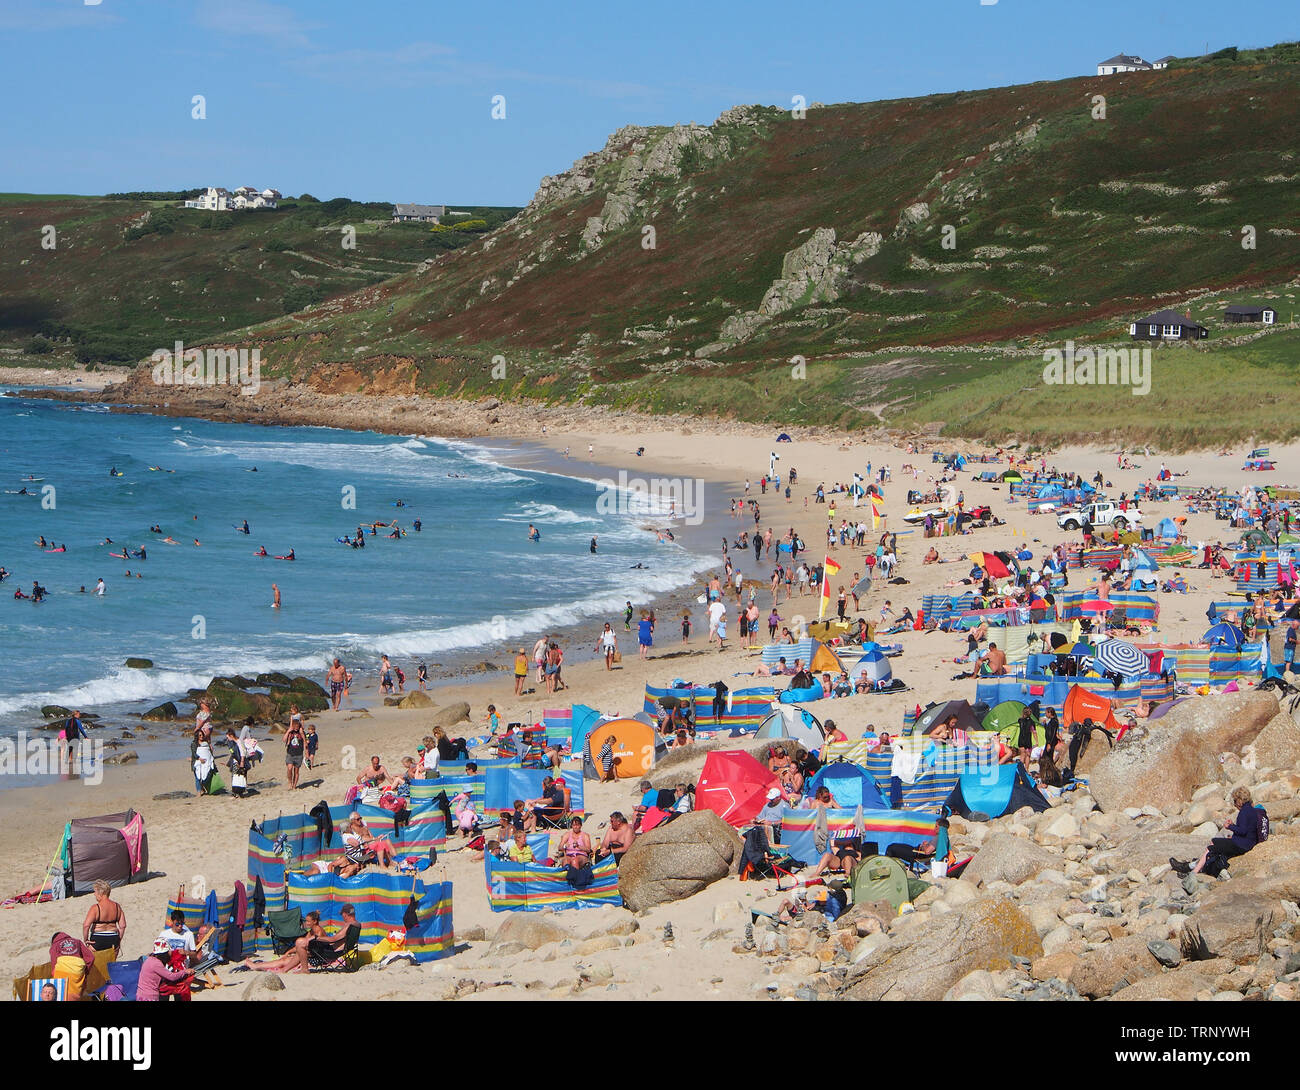 Une foule de gens qui profitent d'une journée d'été ensoleillée sur la plage de Sennen Cove Cornwall, Angleterre, Royaume-Uni, montrant la plage de sable et la mer bleue sous un ciel bleu. Banque D'Images